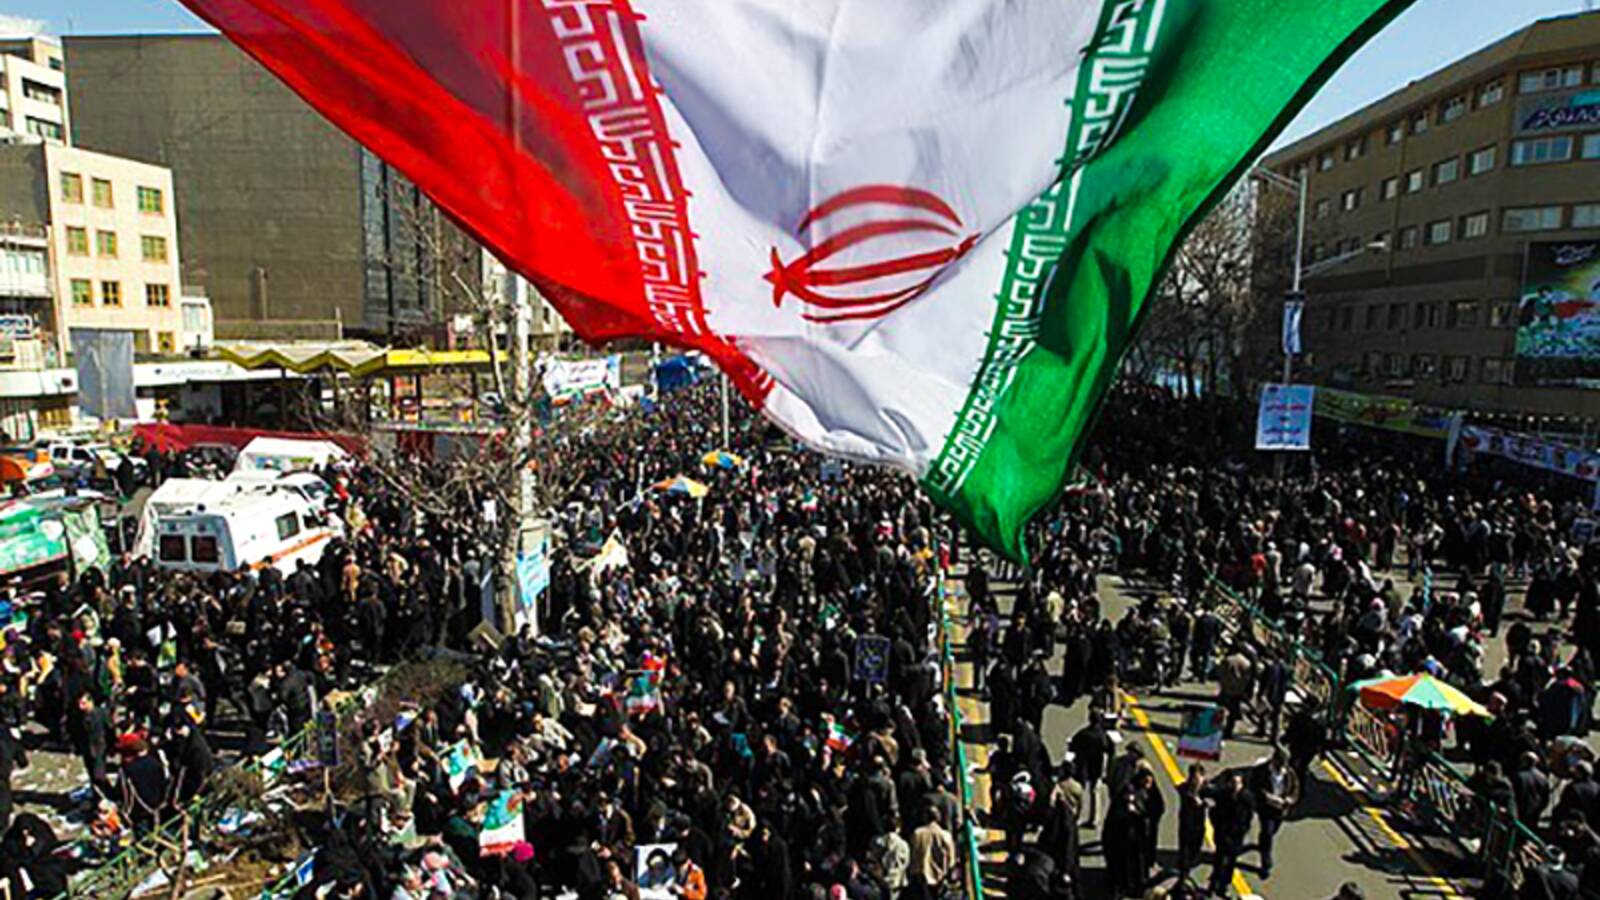 انتصار الثورة الإسلامية الإيرانية (عشرة الفجر)